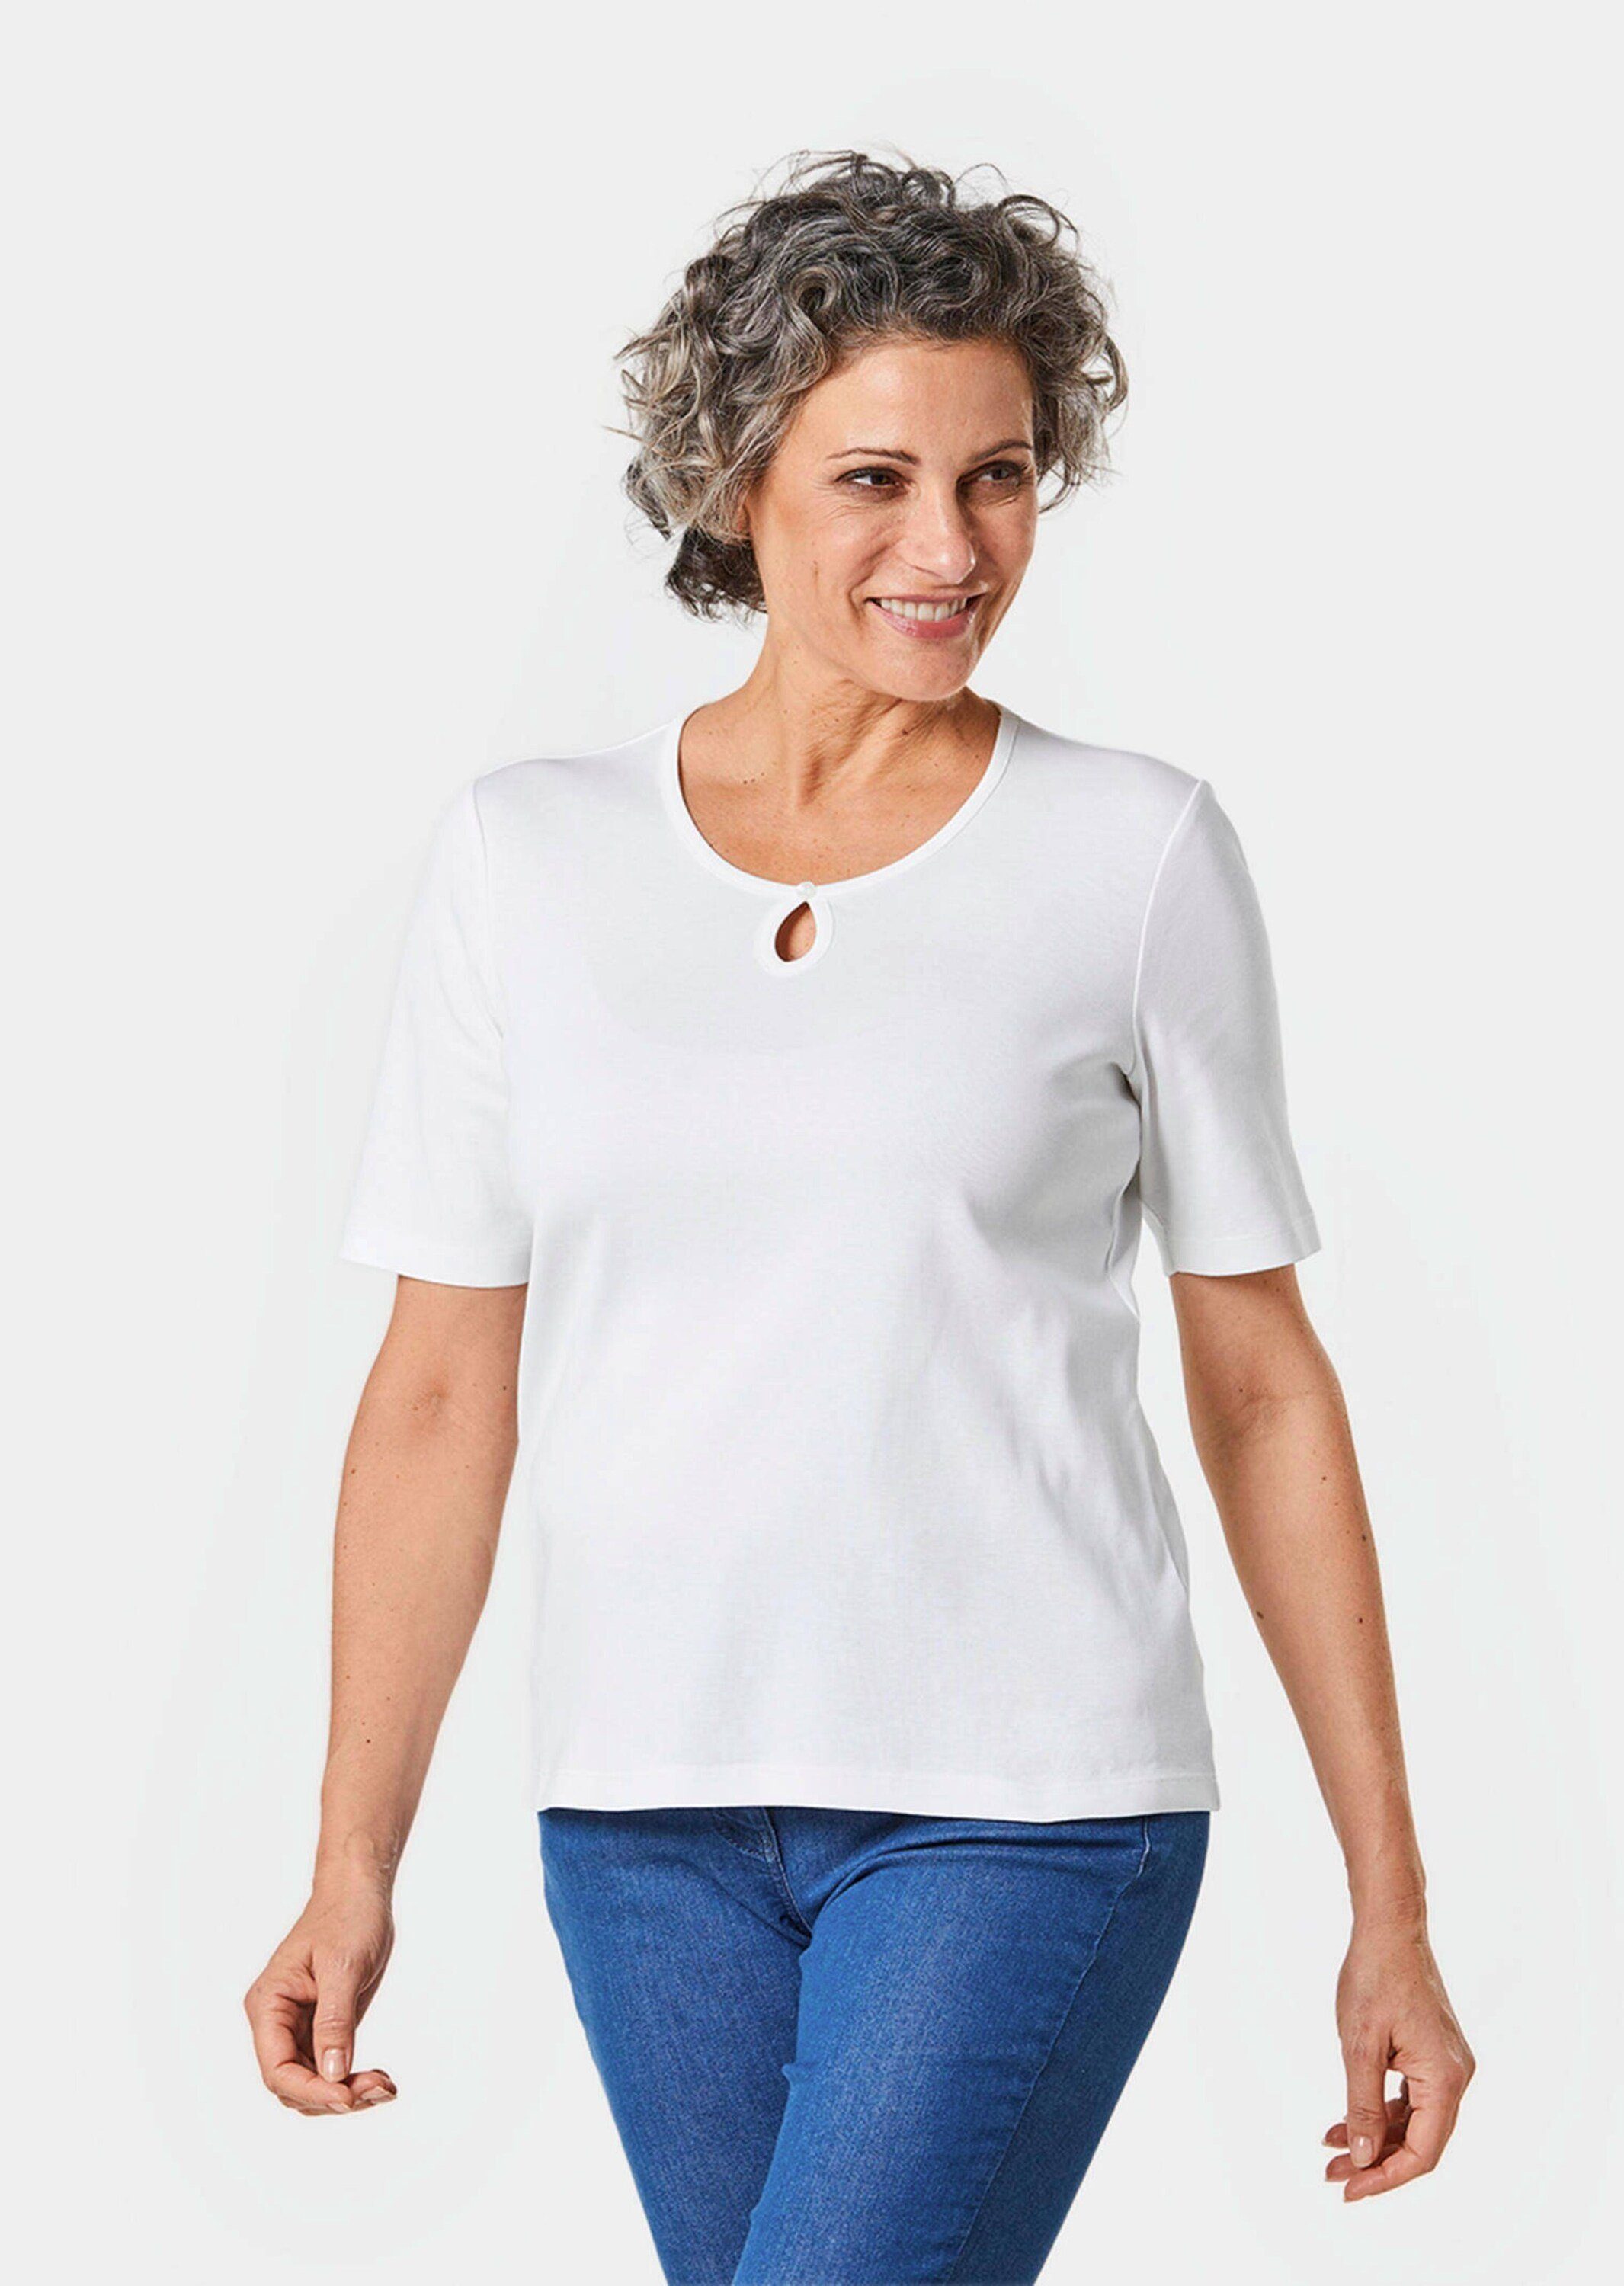 GOLDNER T-Shirt Kurzgröße: Basic T-Shirt aus weiß reiner Baumwolle